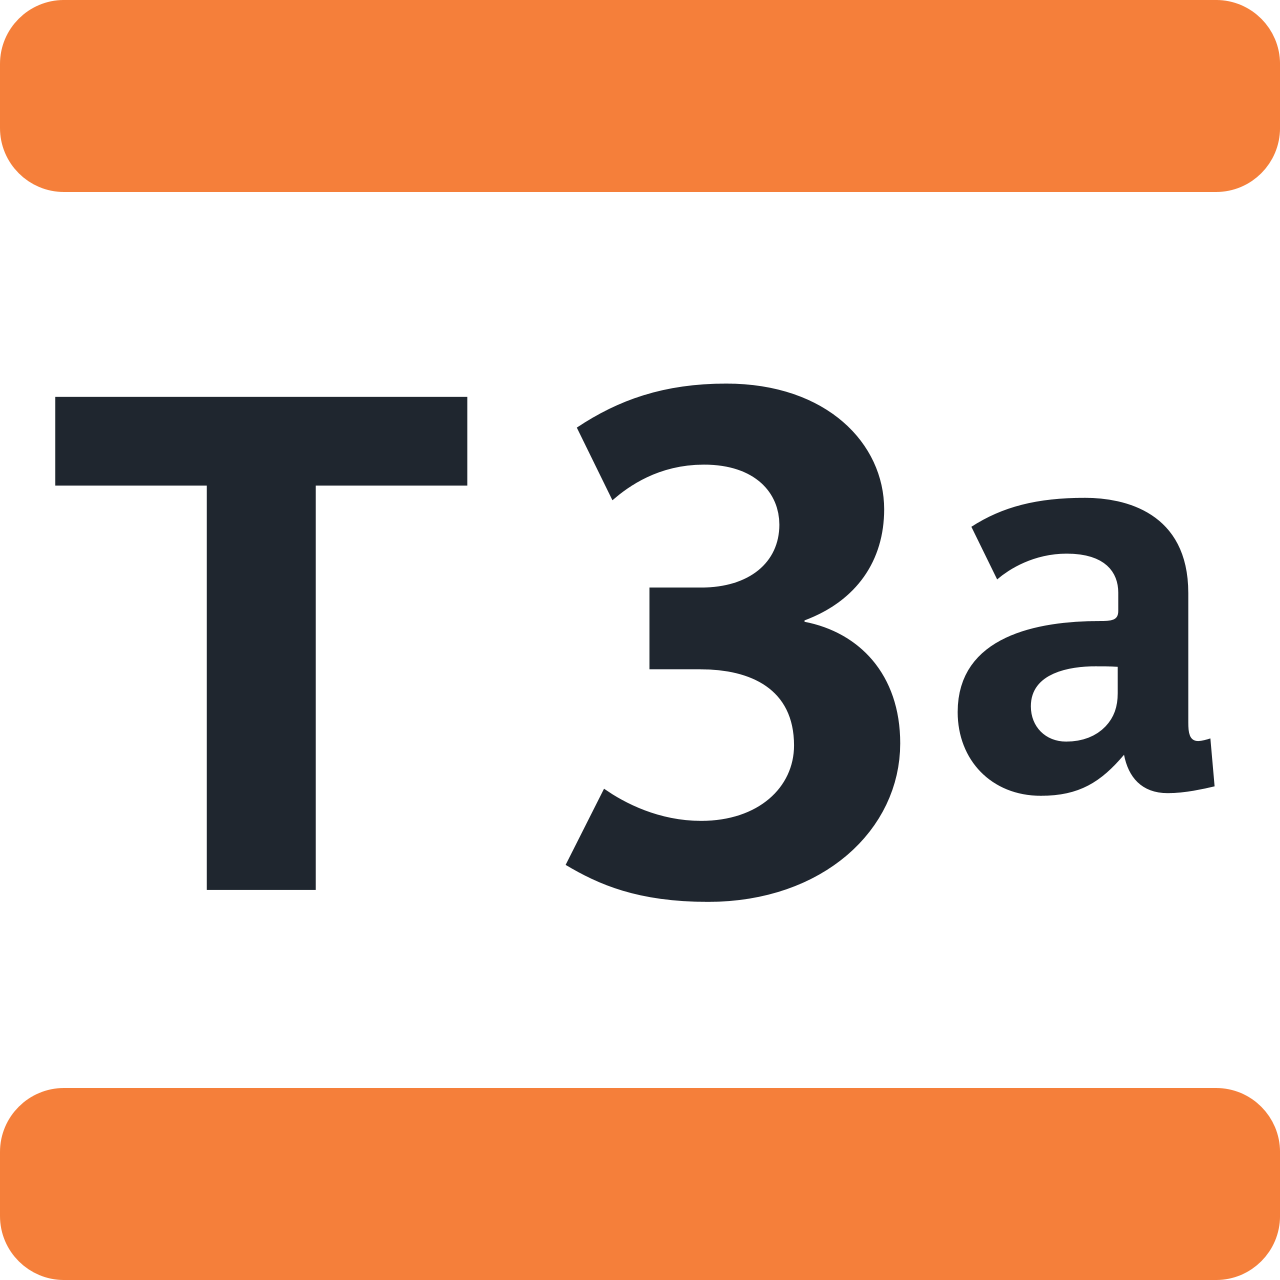 Ligne T3a